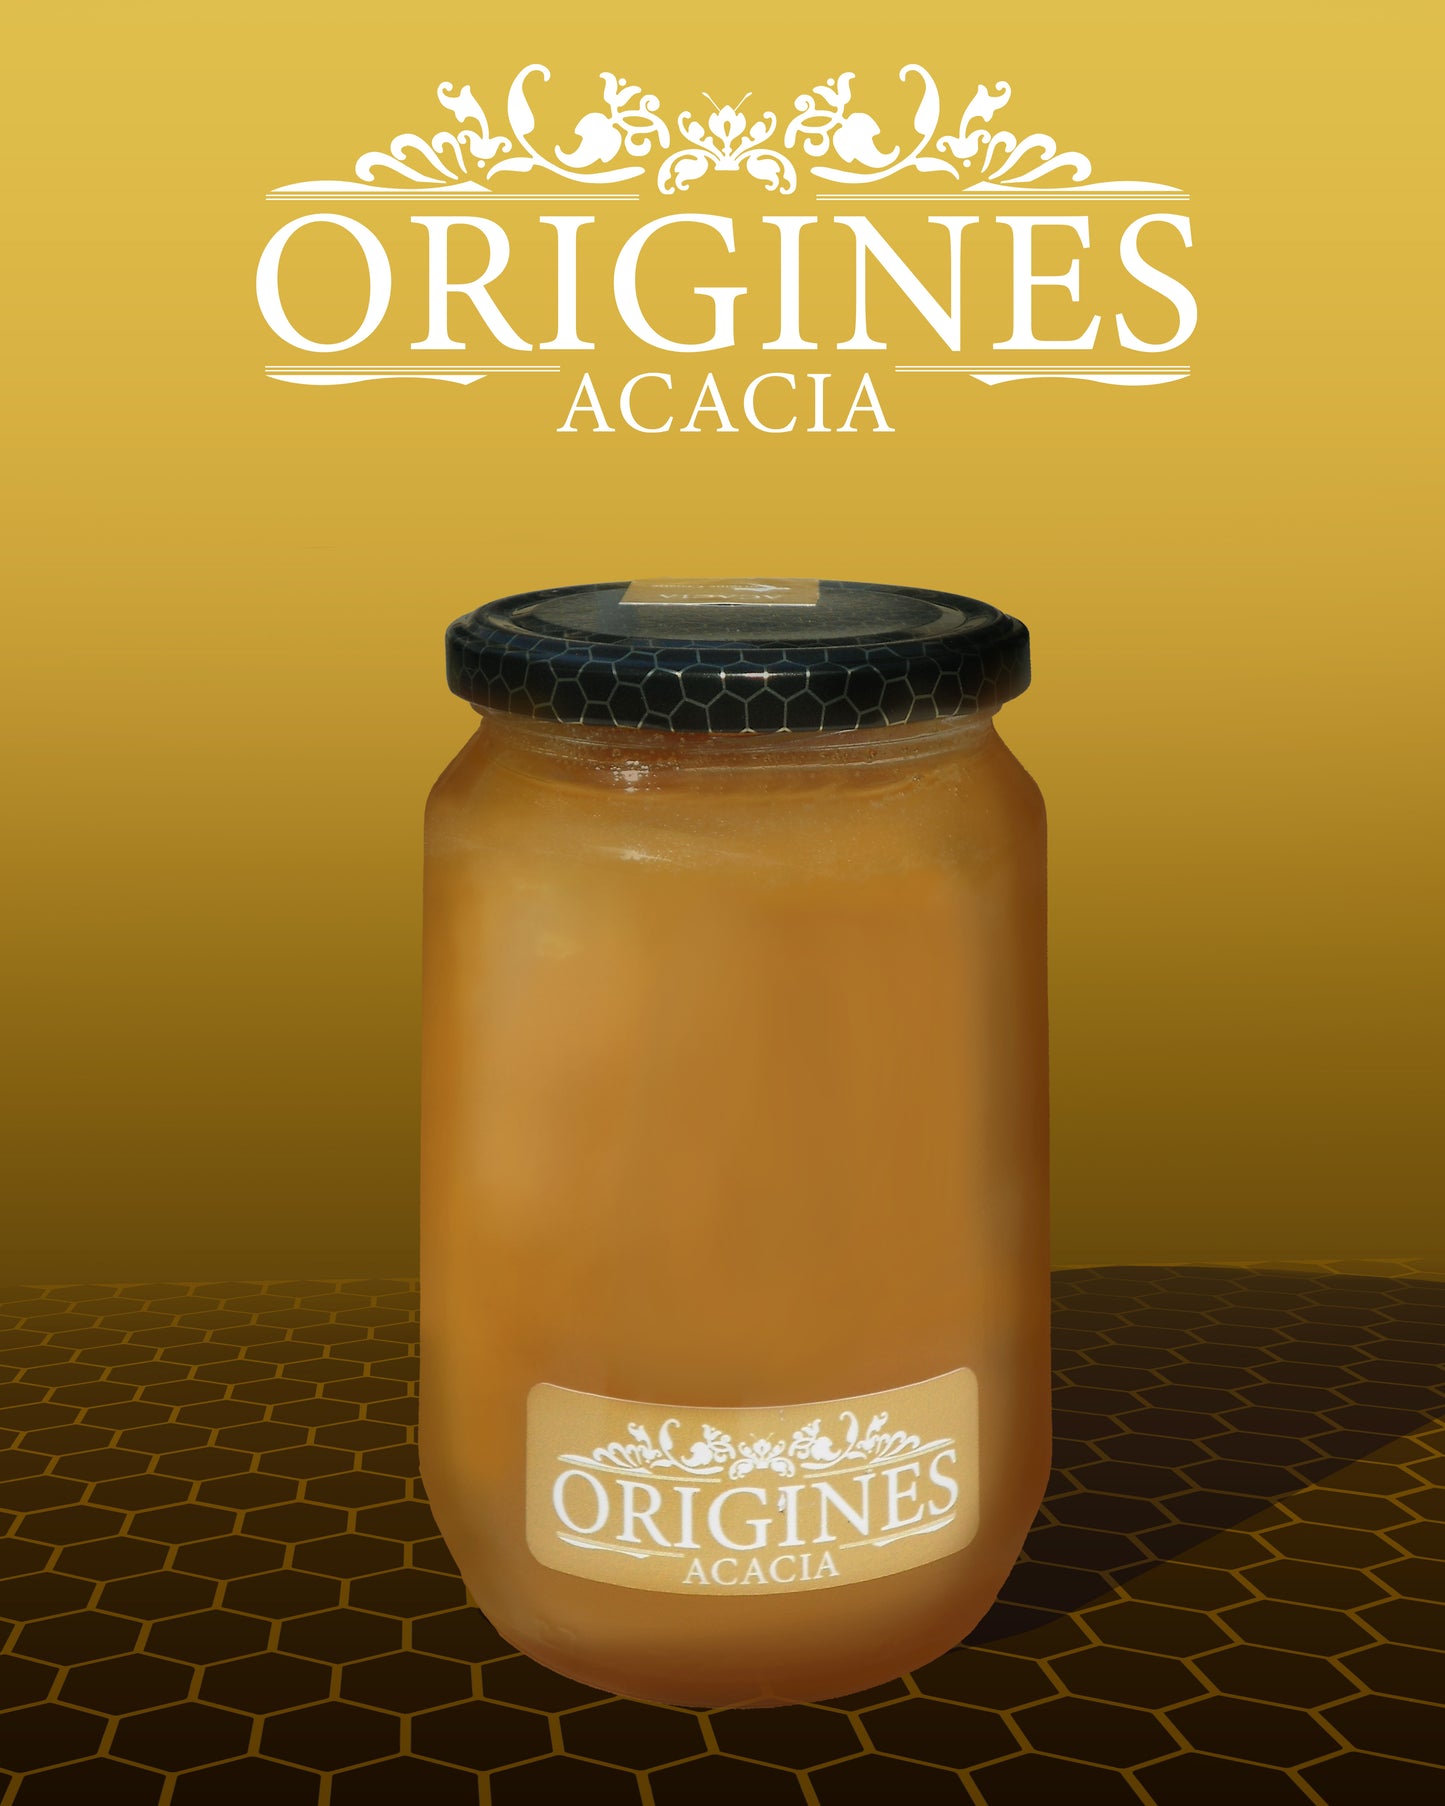 Notre pot de miel d'Acacia de 900 g, étiqueté avec soin, contenant un miel doré et lumineux.